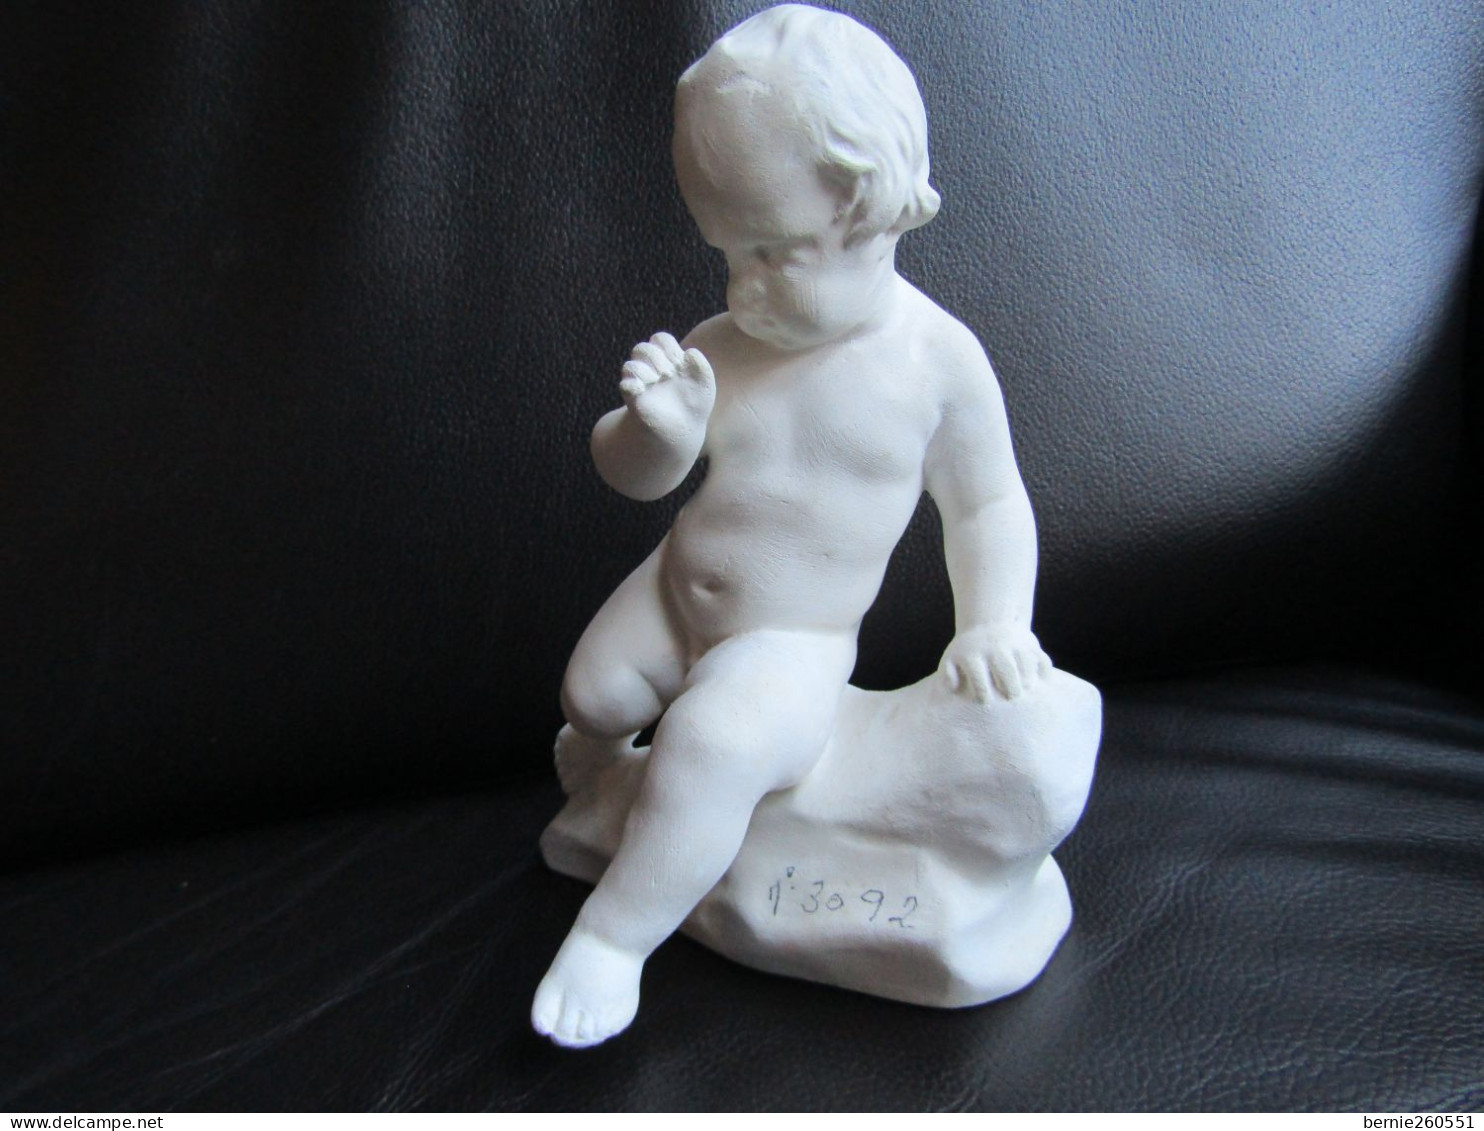 Superbe statuette d'un chérubin/enfant assis